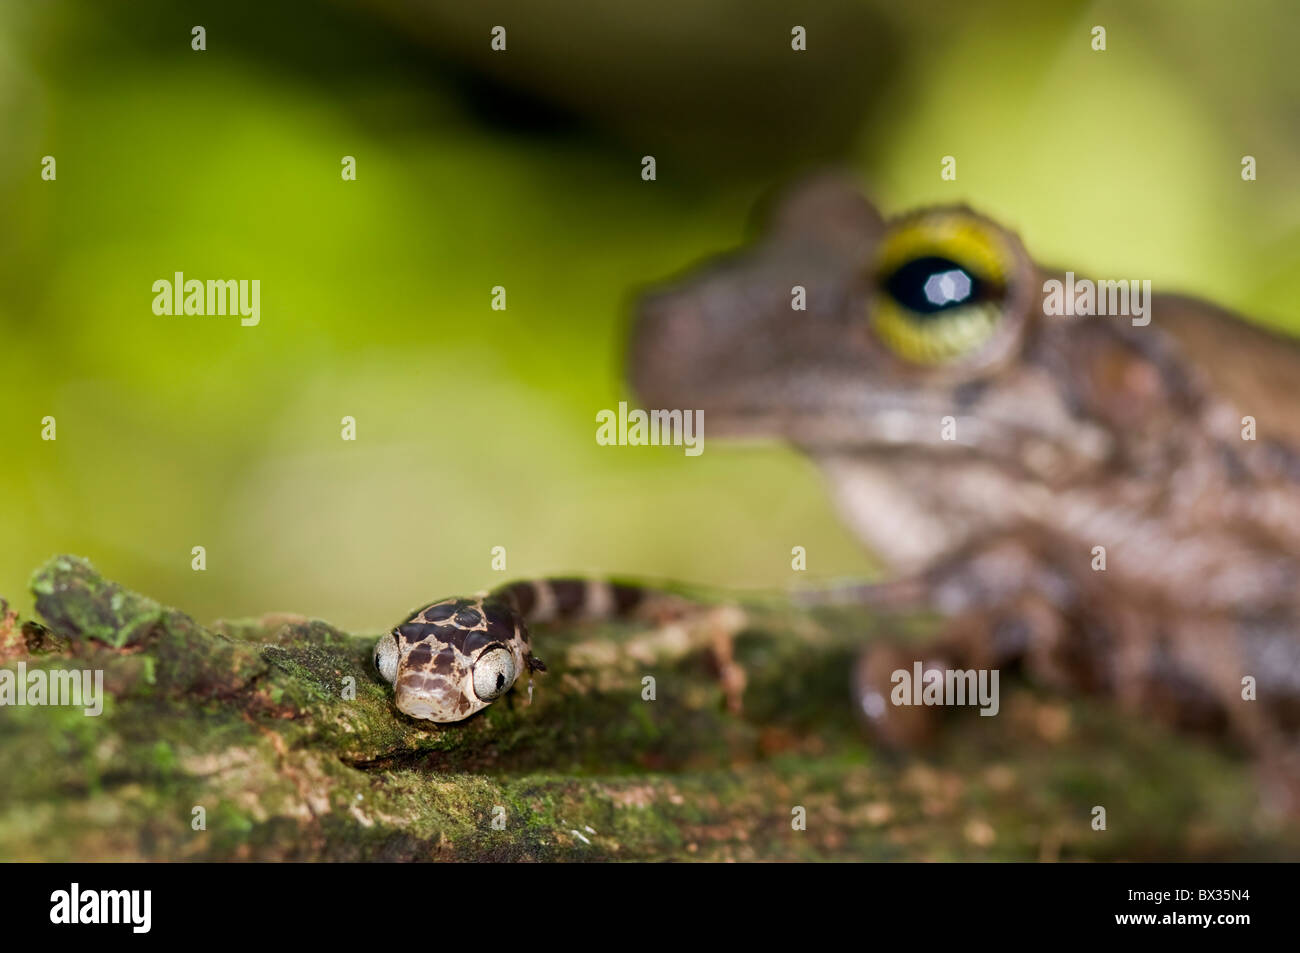 Small 'Imantodes cenchoa' snake from ecuador near a toad Stock Photo